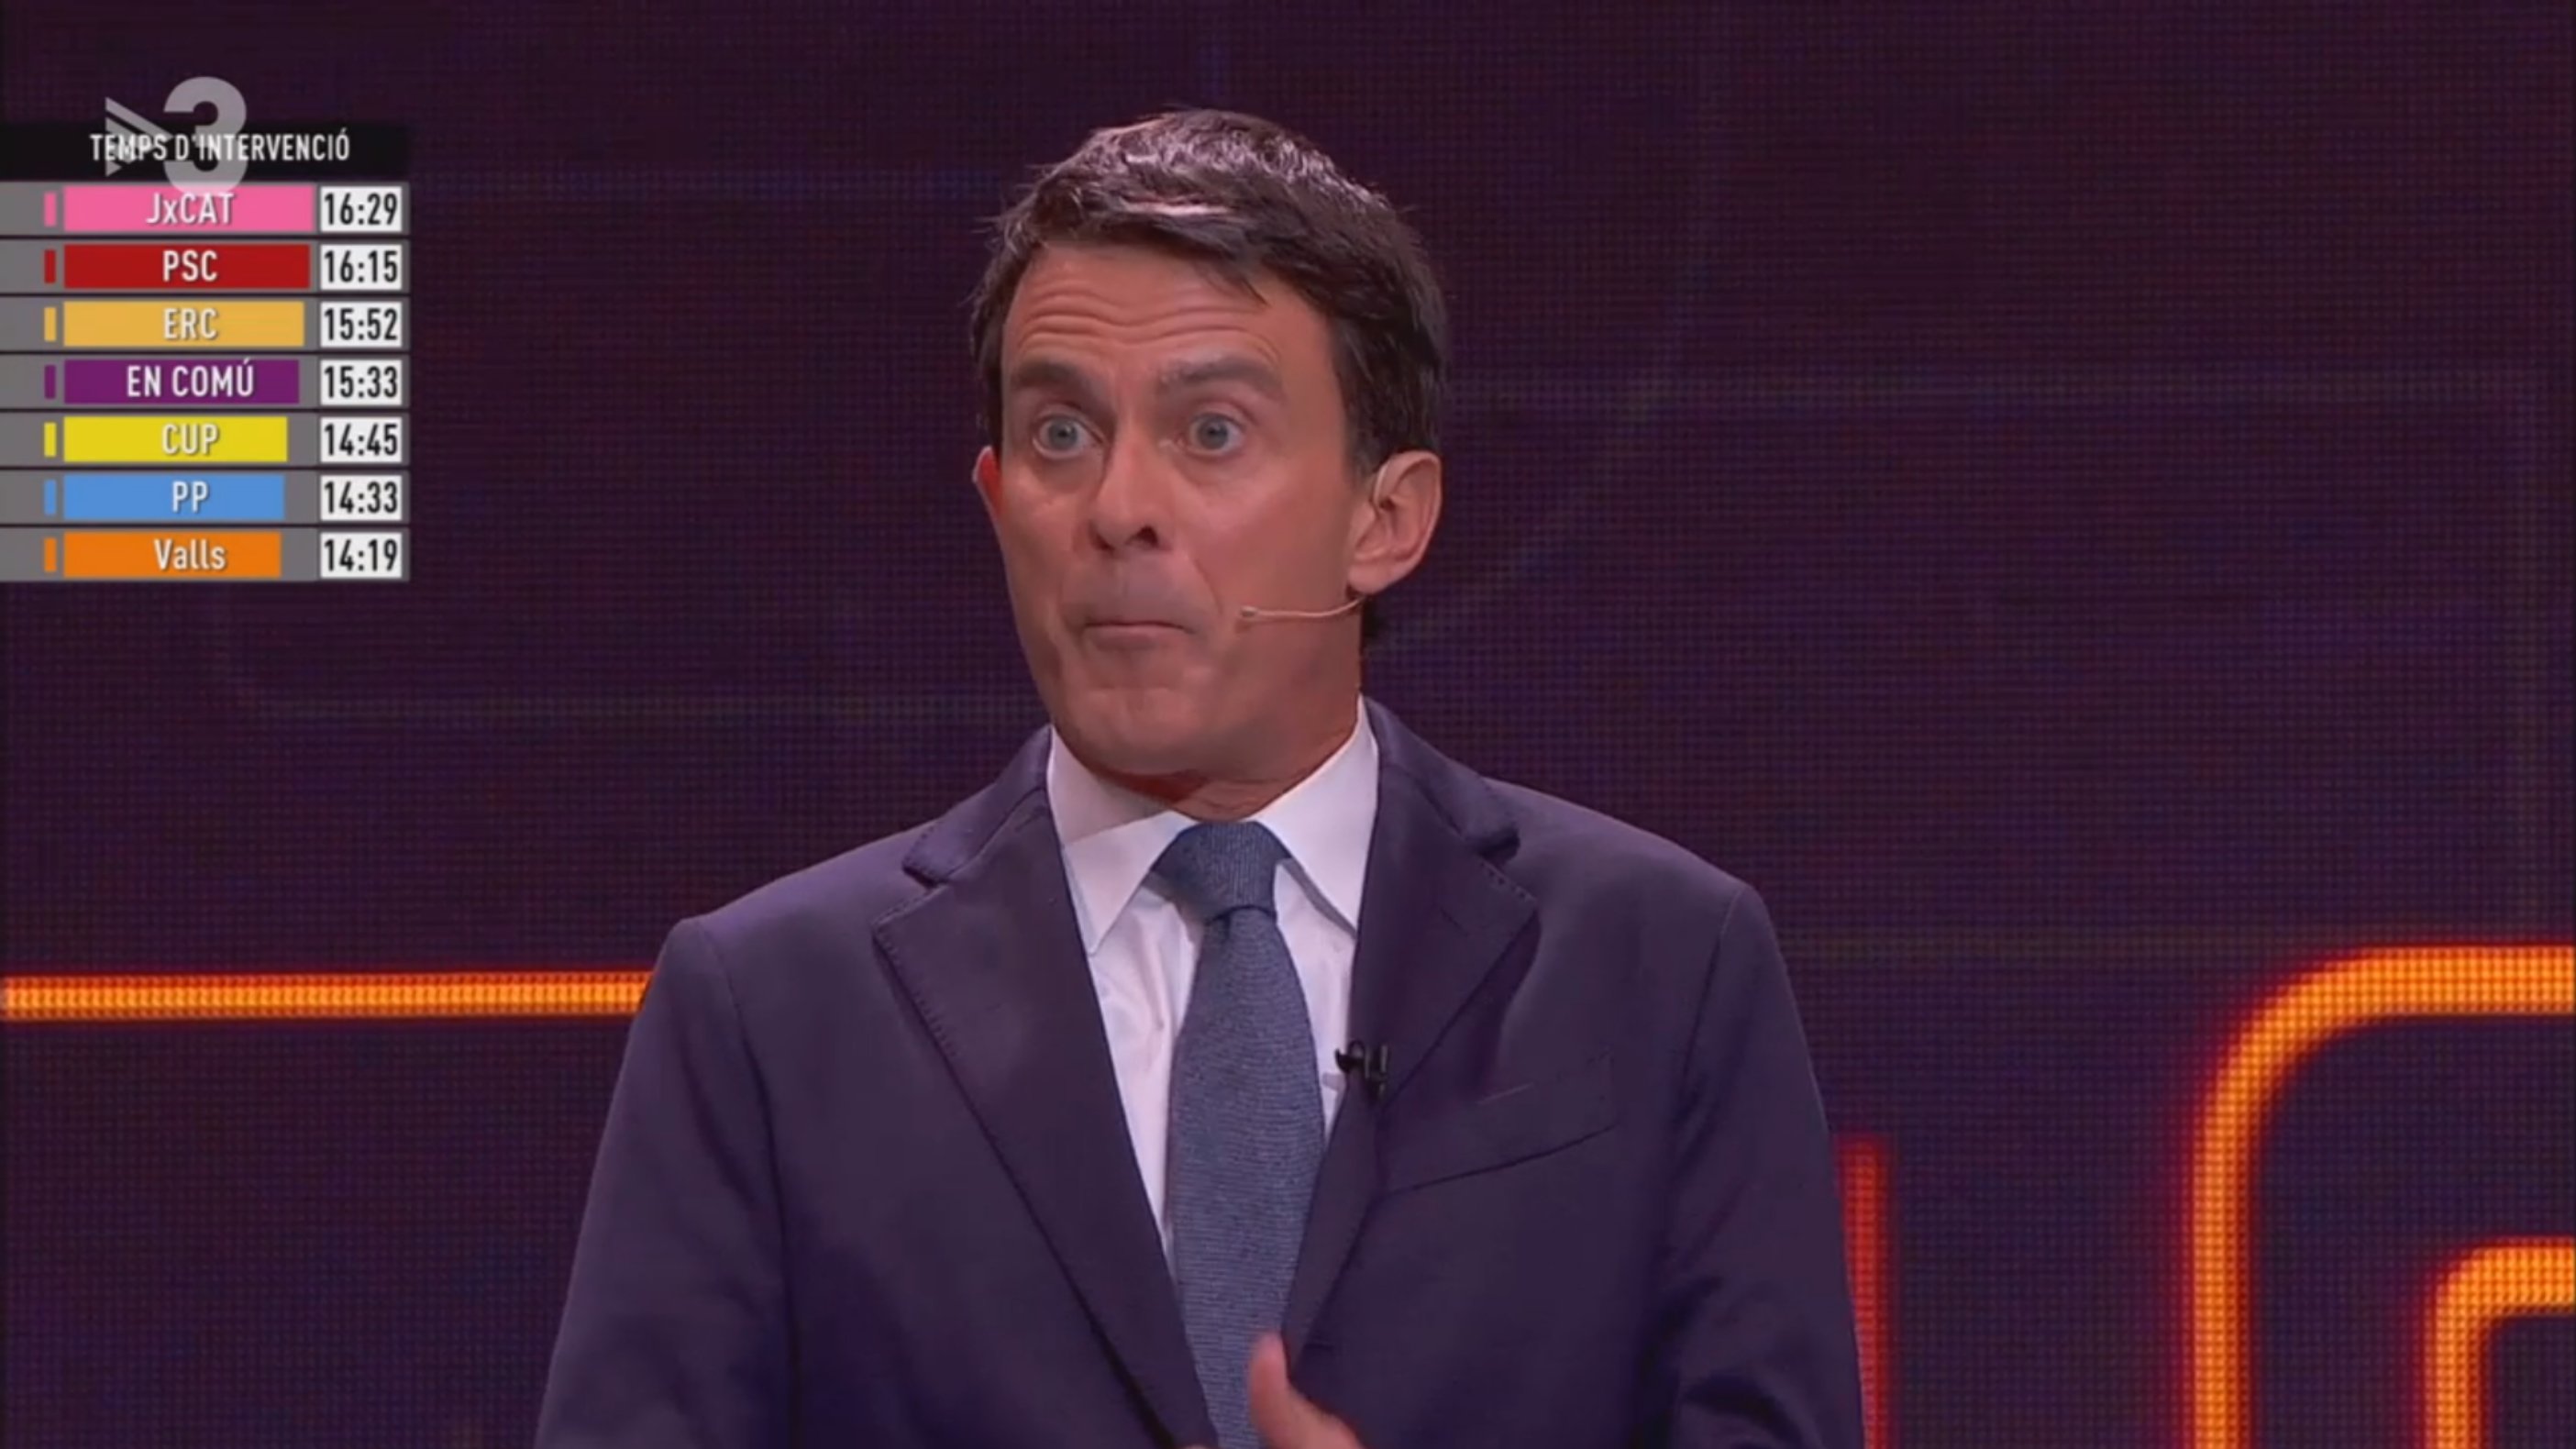 La foto inédita de Manuel Valls, alias Mr. Bean, en el debate electoral de TV3